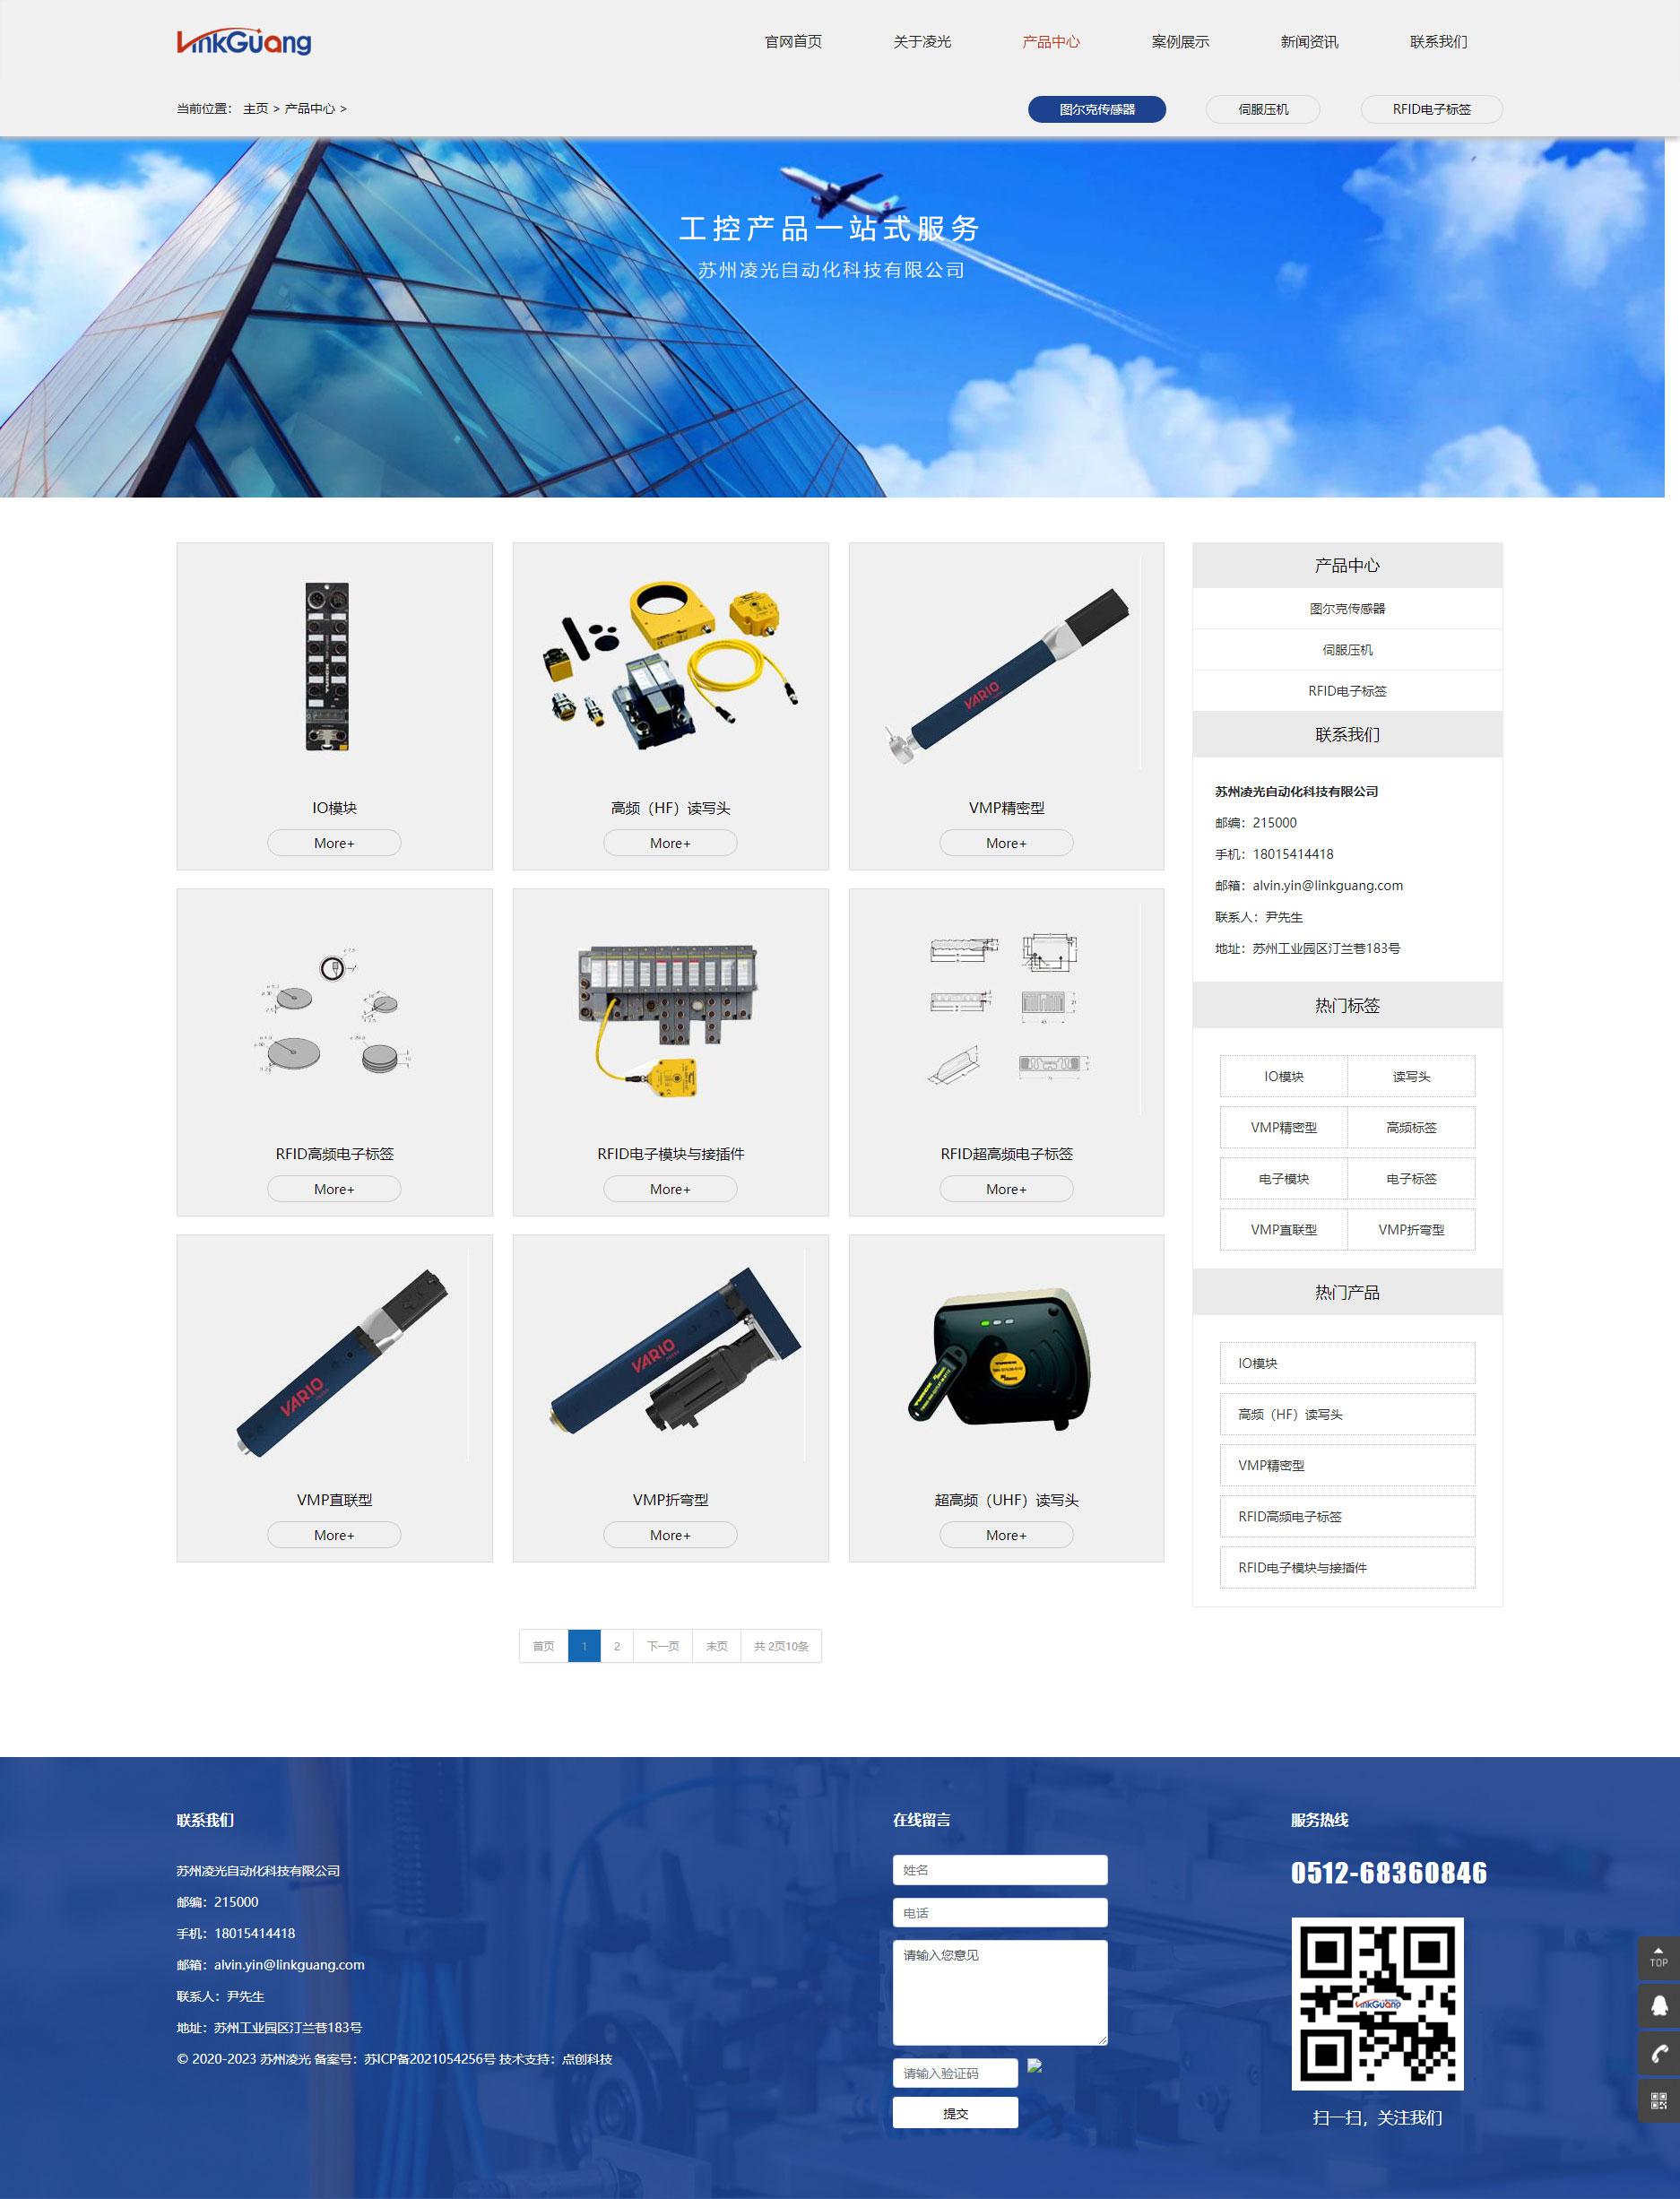 苏州网站建设公司为苏州凌光自动化科技有限公司设计的官网产品页面